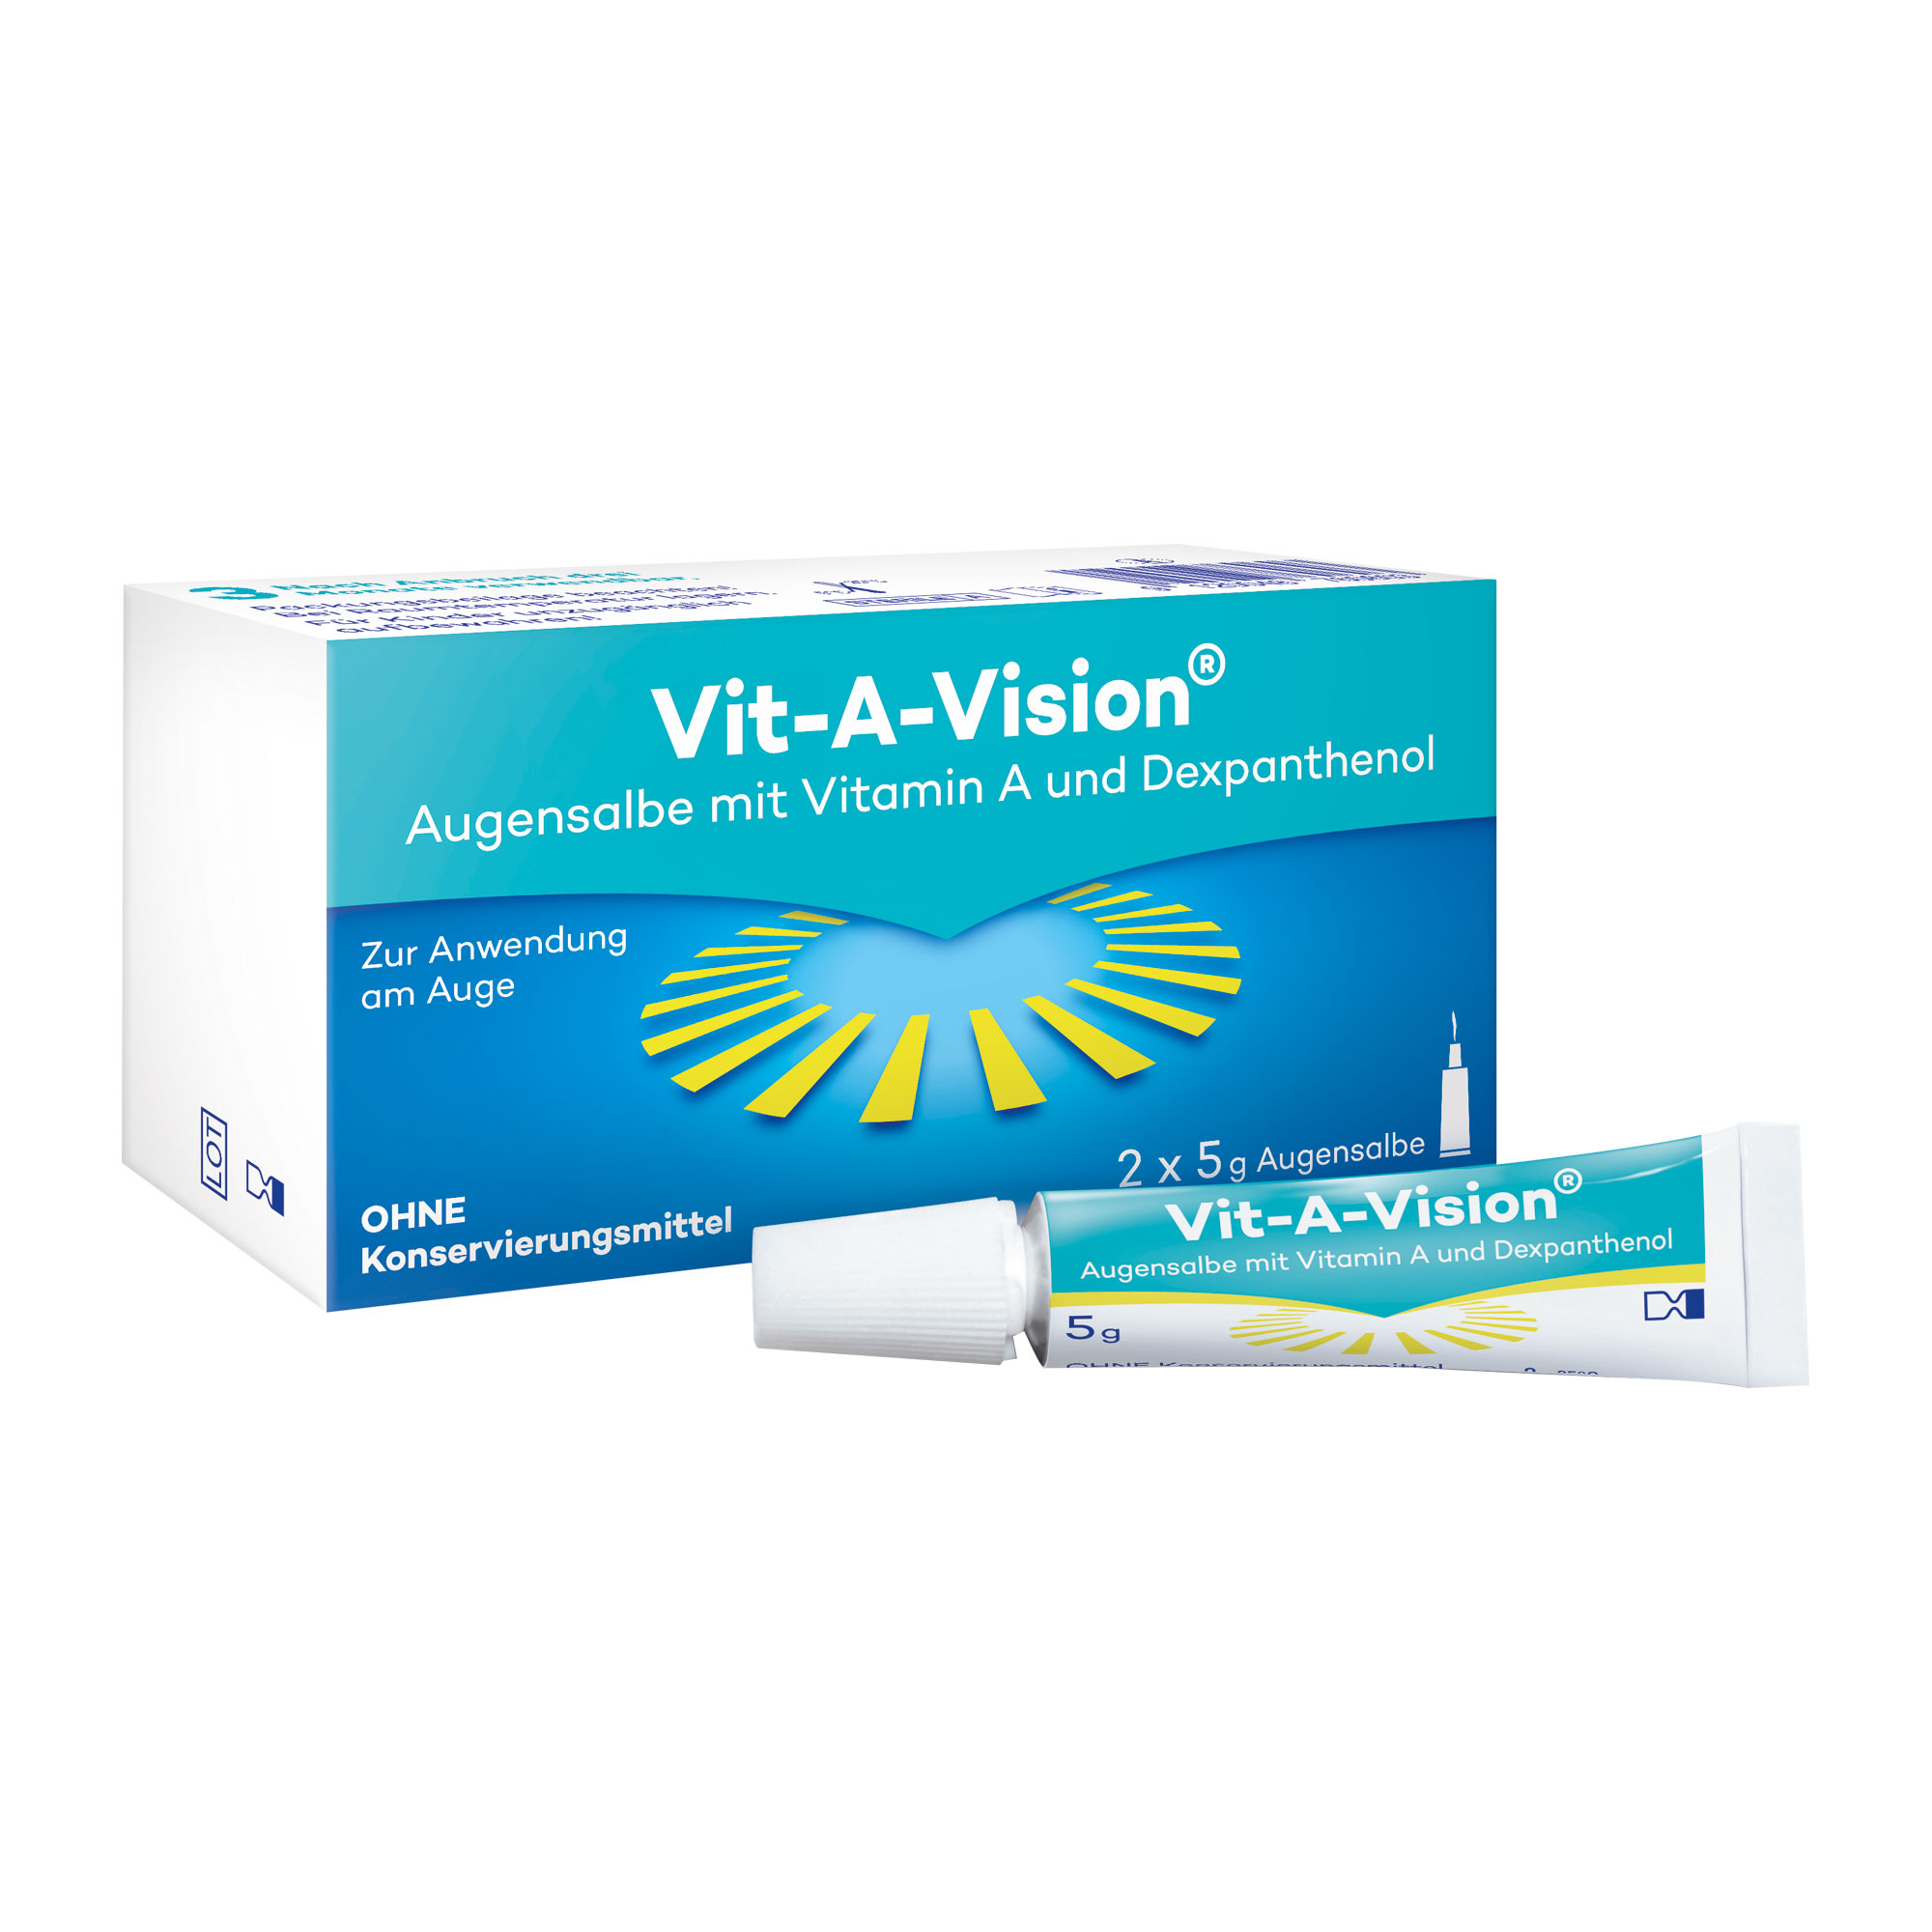 Augensalbe mit Vitamin A, Vitamin E und Dexpanthenol ohne Konservierungsmittel. Doppelpack.